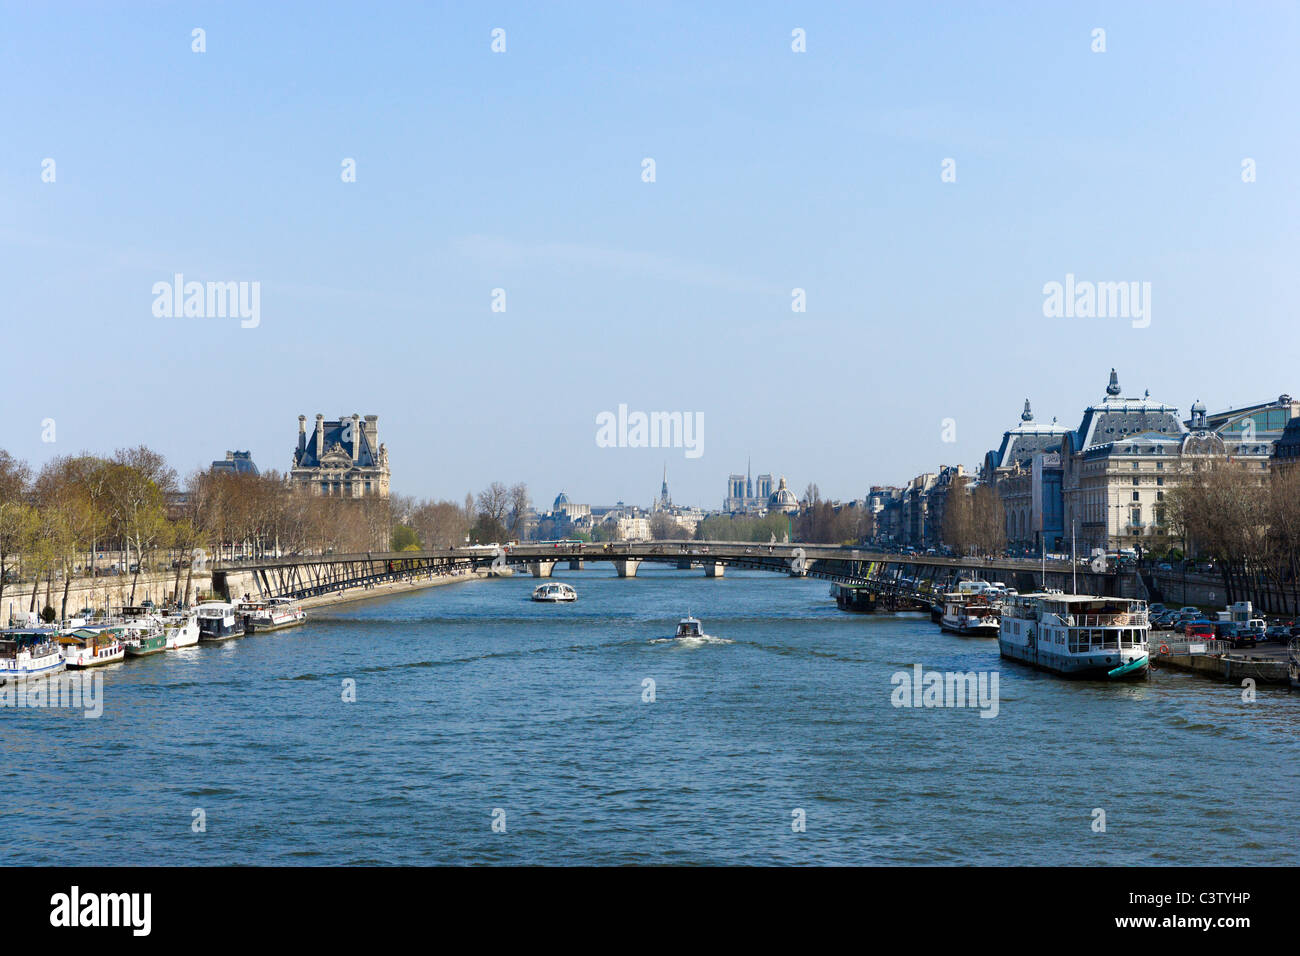 View of the River Seine from the Pont de la Concorde, Paris, France Stock Photo